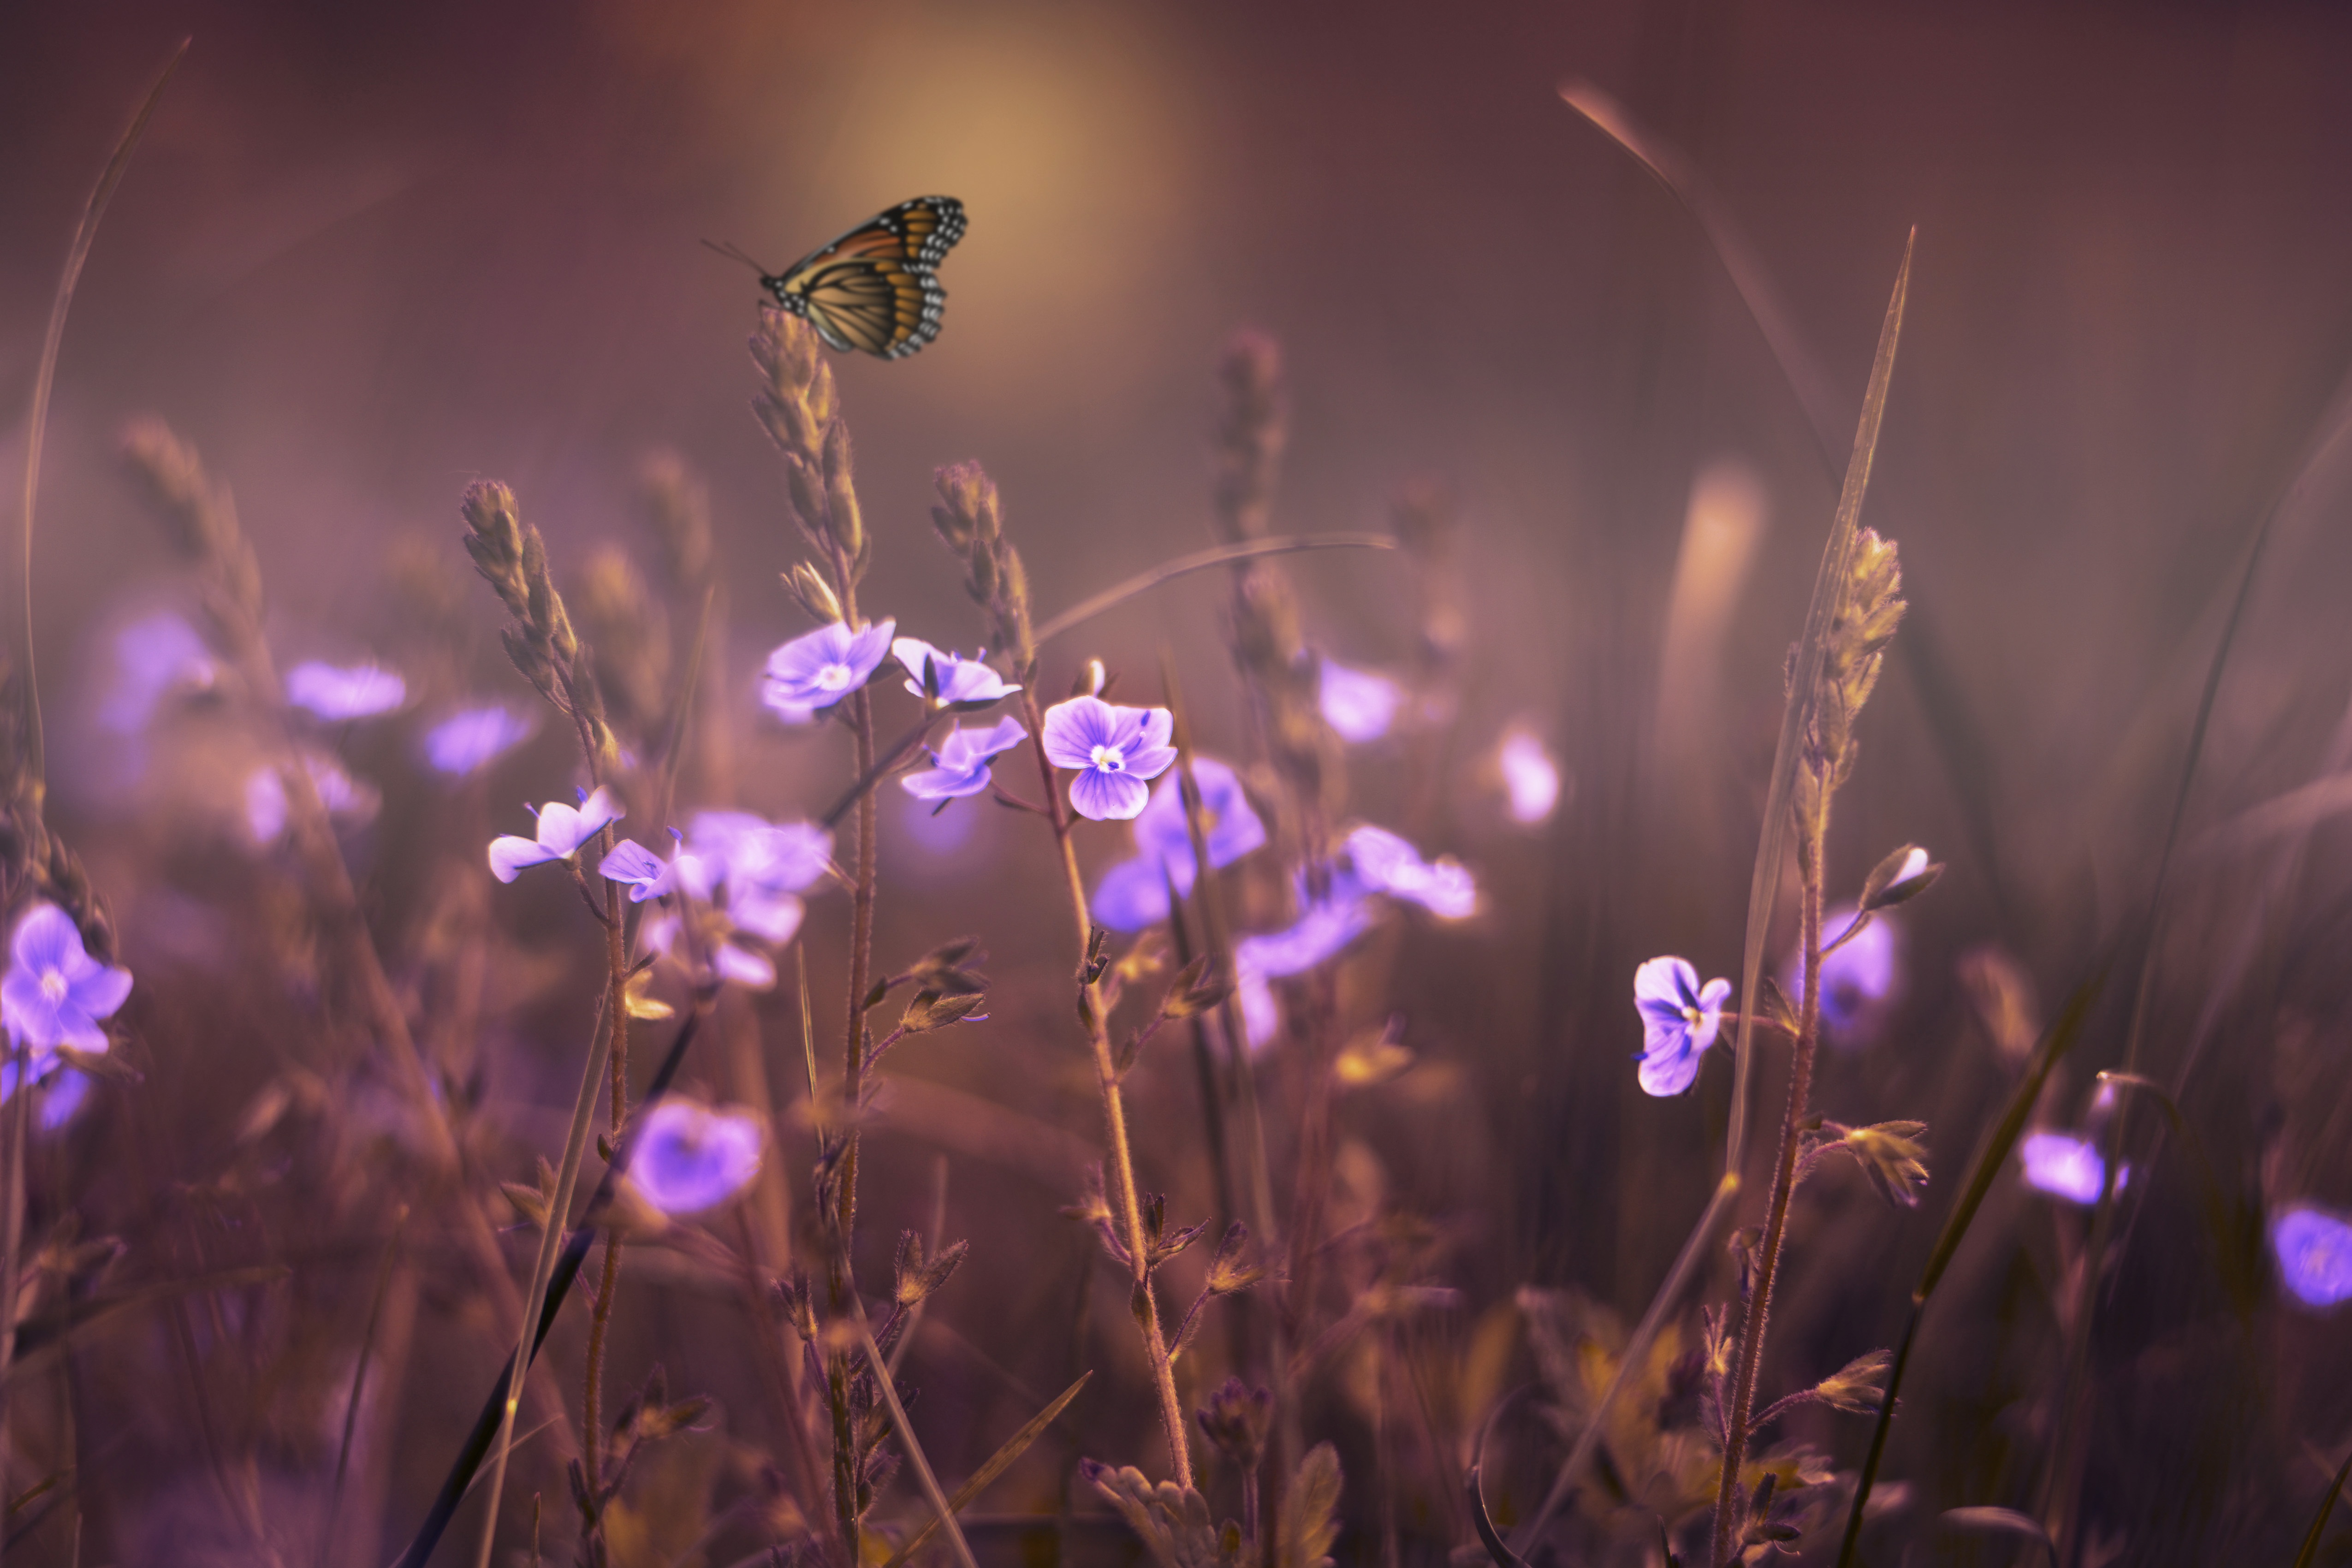 Бесплатное фото Одинокая бабочка сидит на траве среди фиолетовых цветов